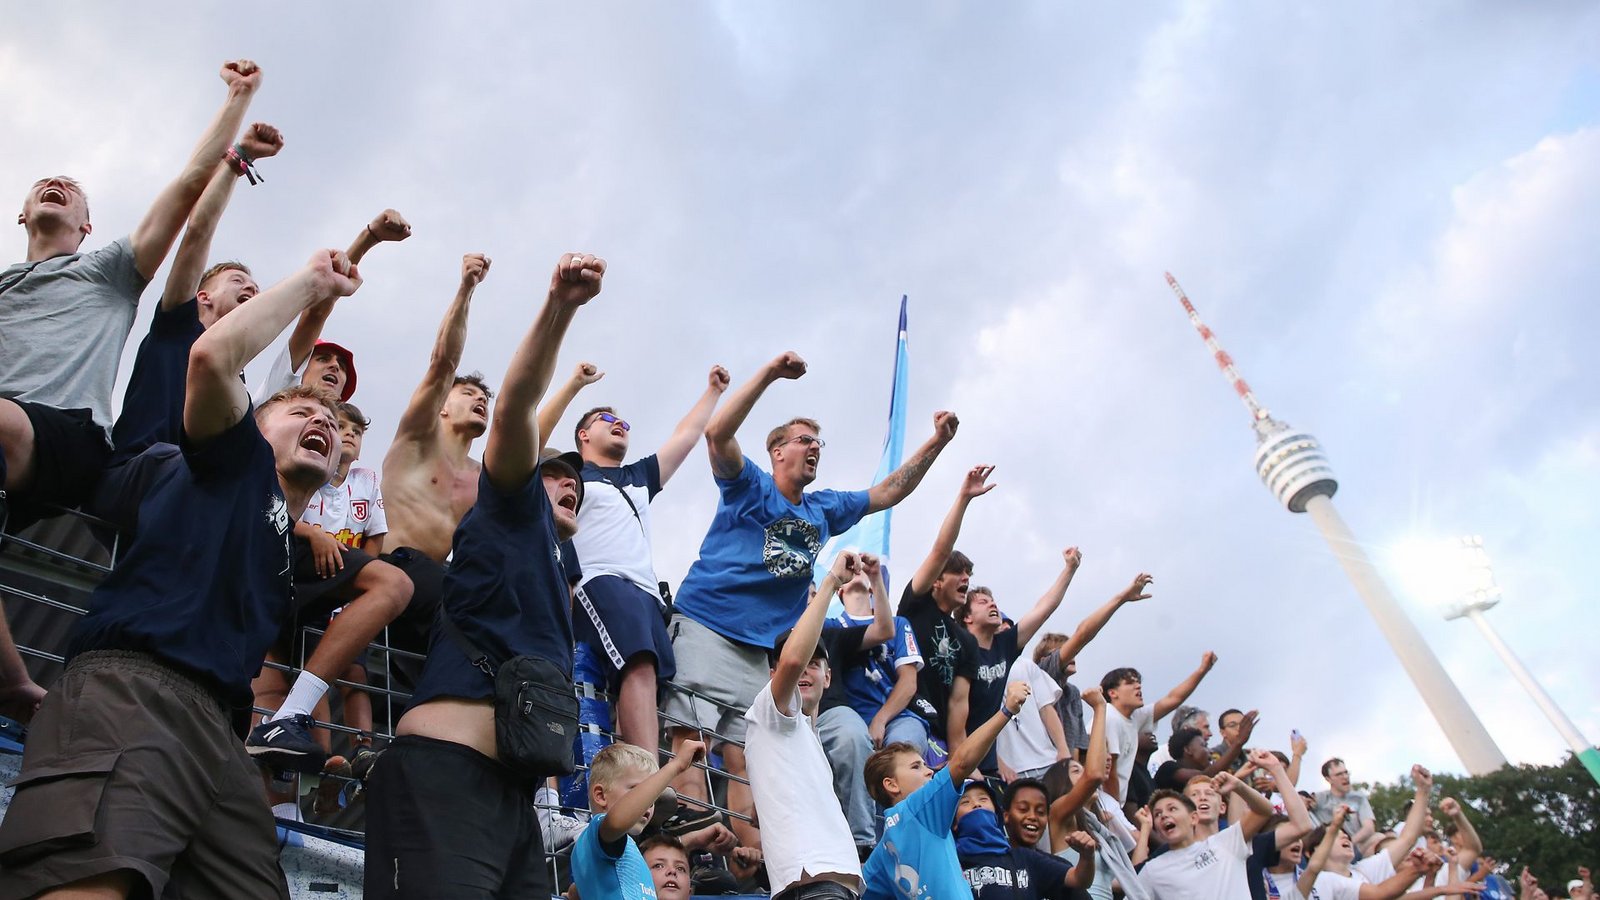 Feiertag für die Fans der Blauen unterm  Fernsehturm.Foto: Pressefoto Baumann/Julia Rahn